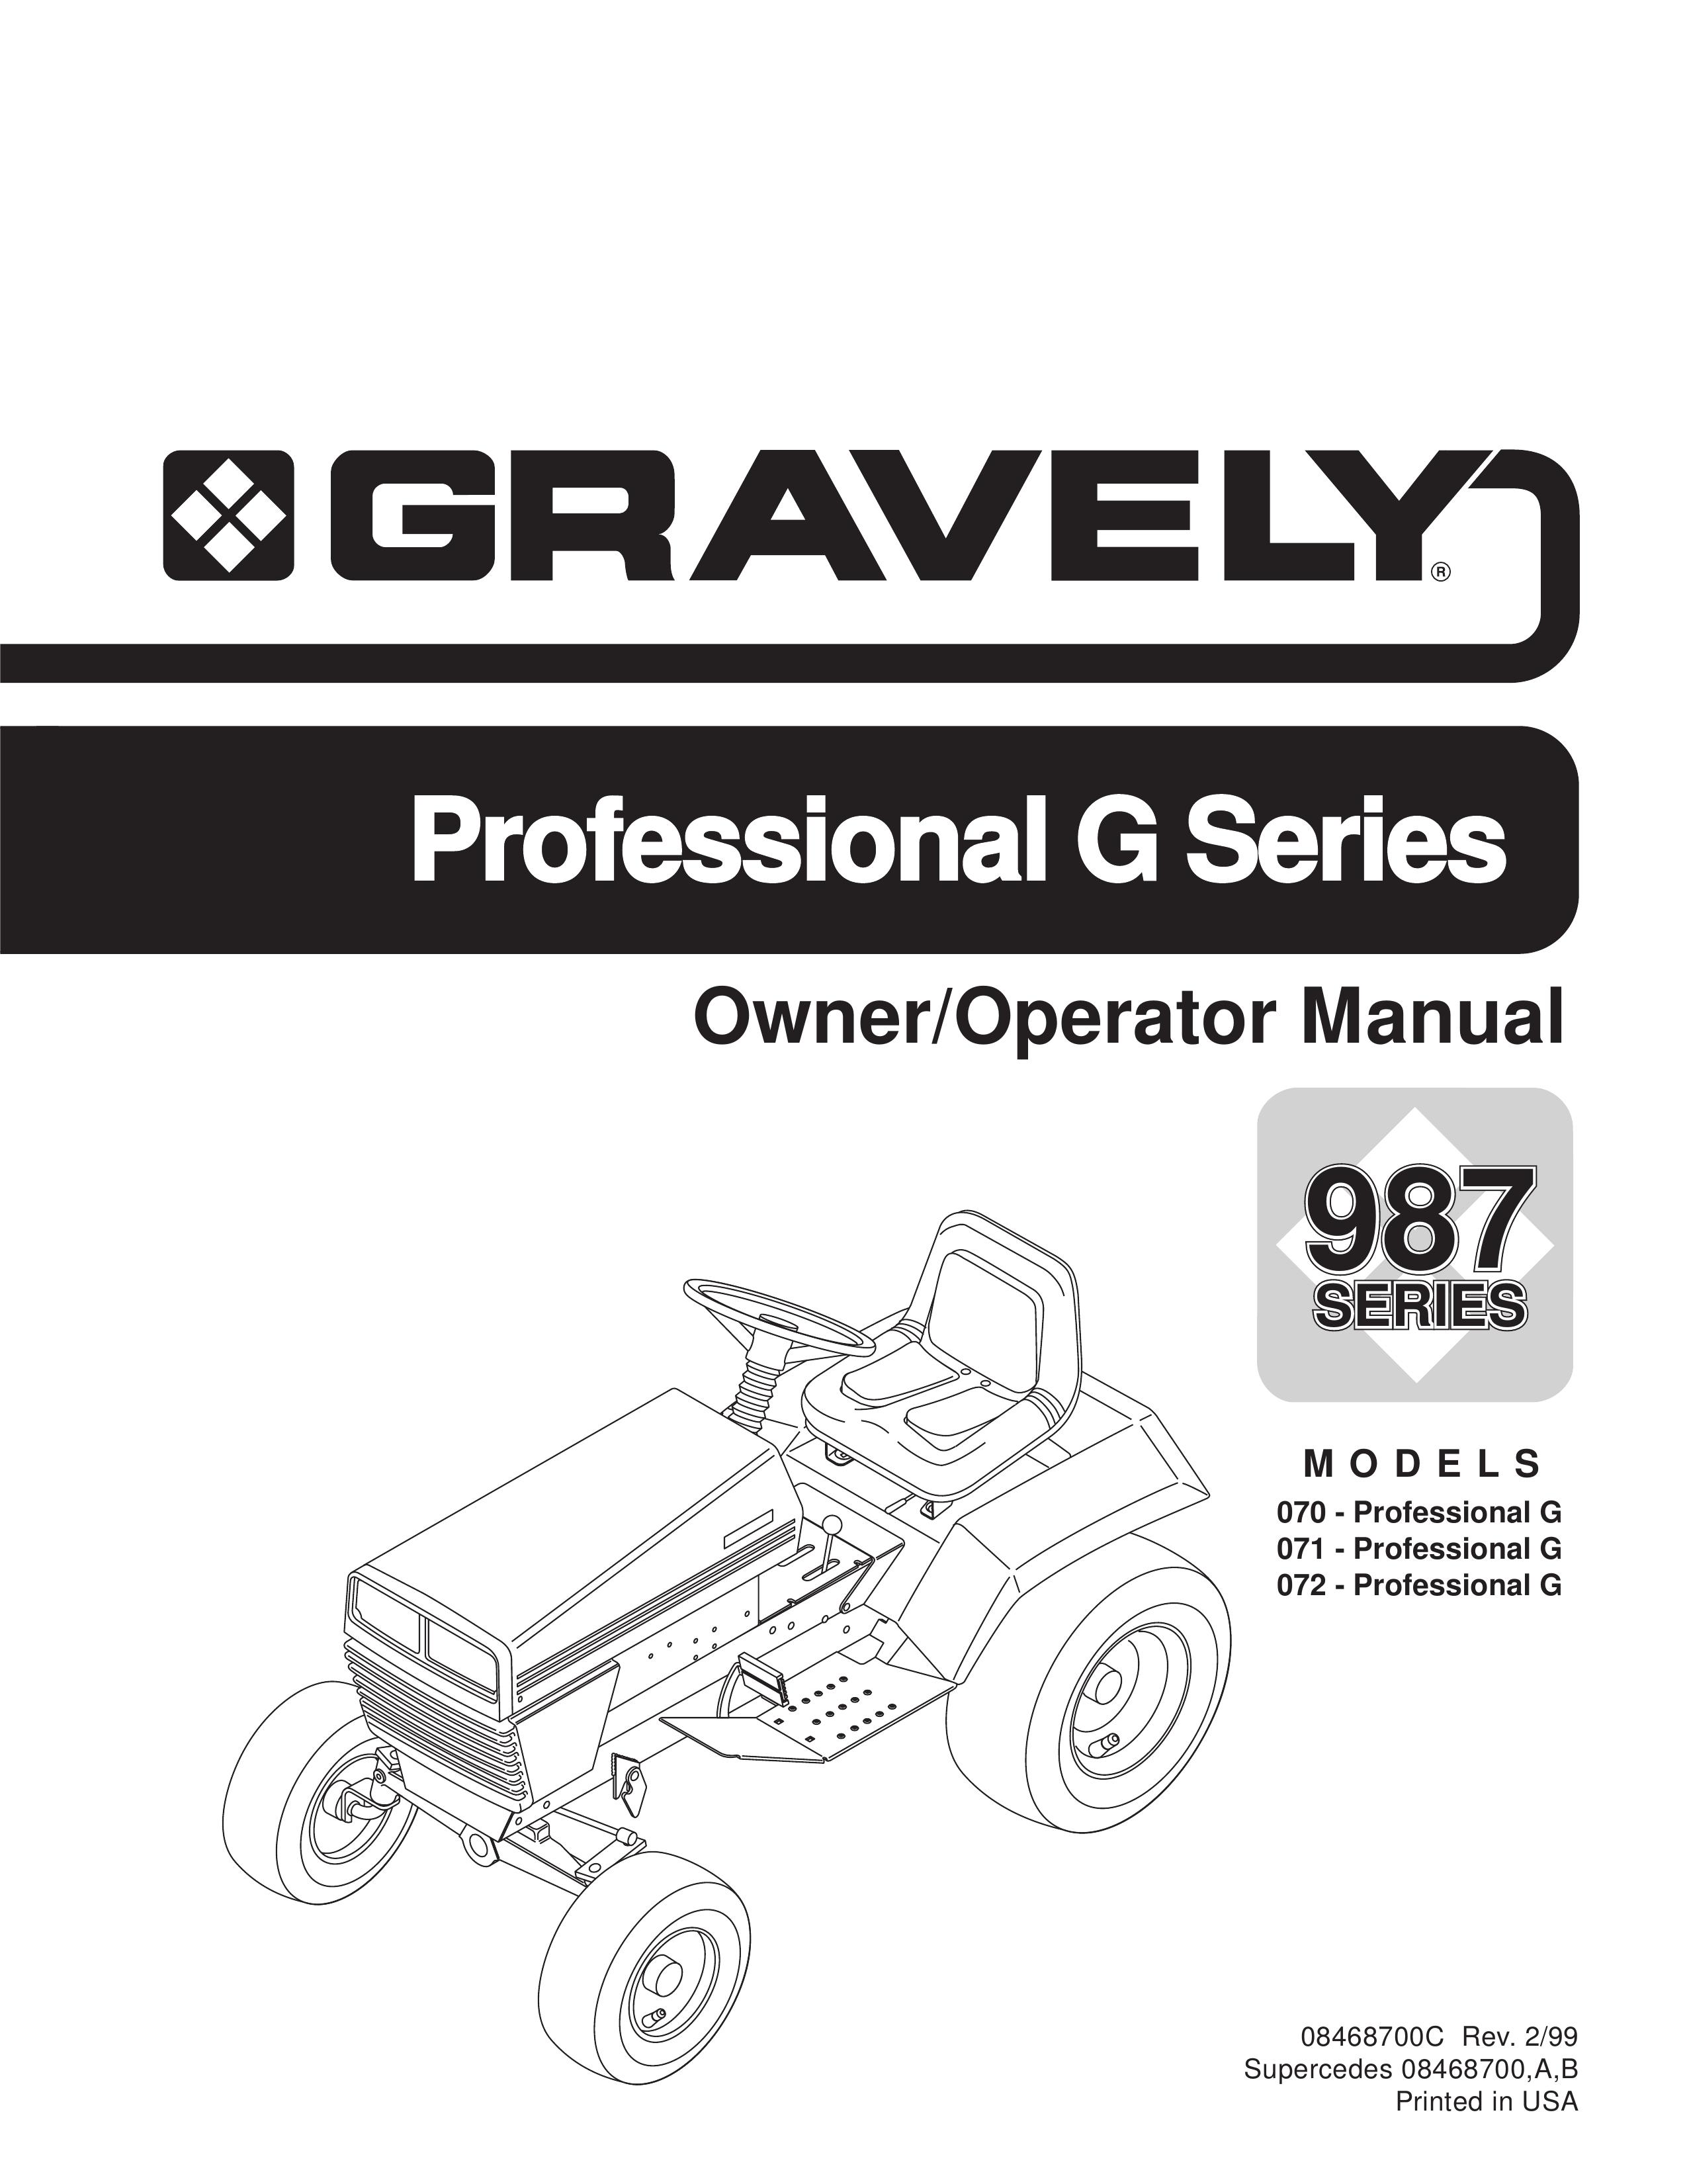 Ariens 070 - Professional G, 071 - Professional G, 072 - Professional G Lawn Mower User Manual